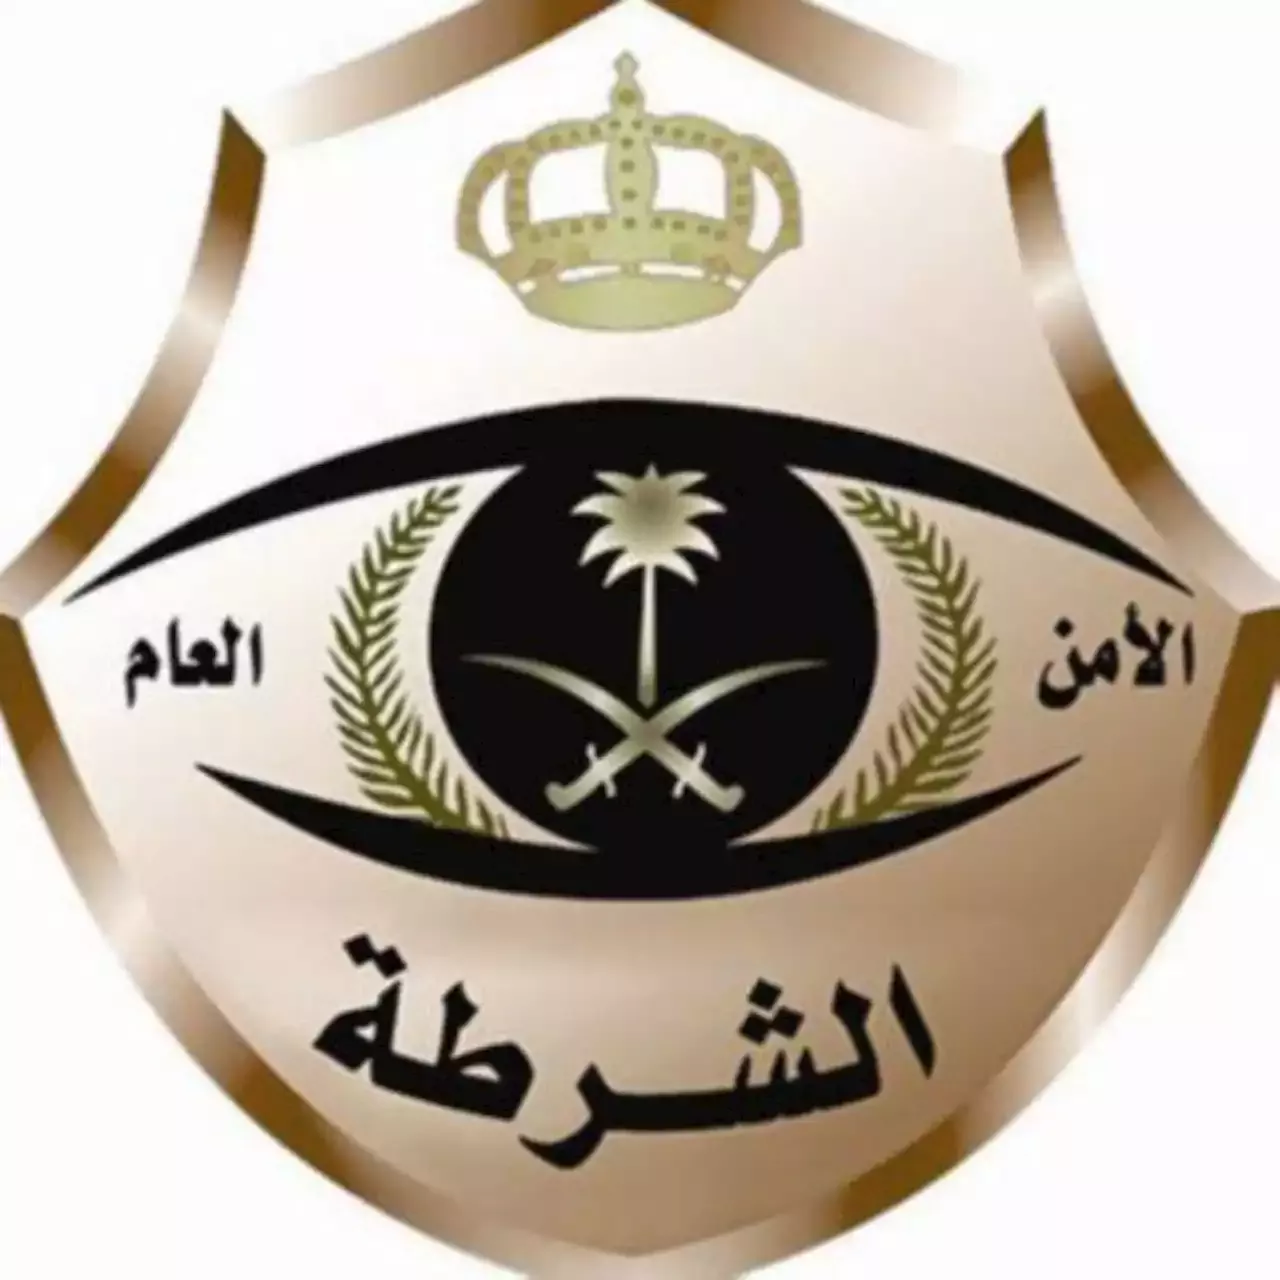 شرطة الرياض: القبض على مواطن بحالة غير طبيعية ظهر في مقطع فيديو مدعياً النبوّة